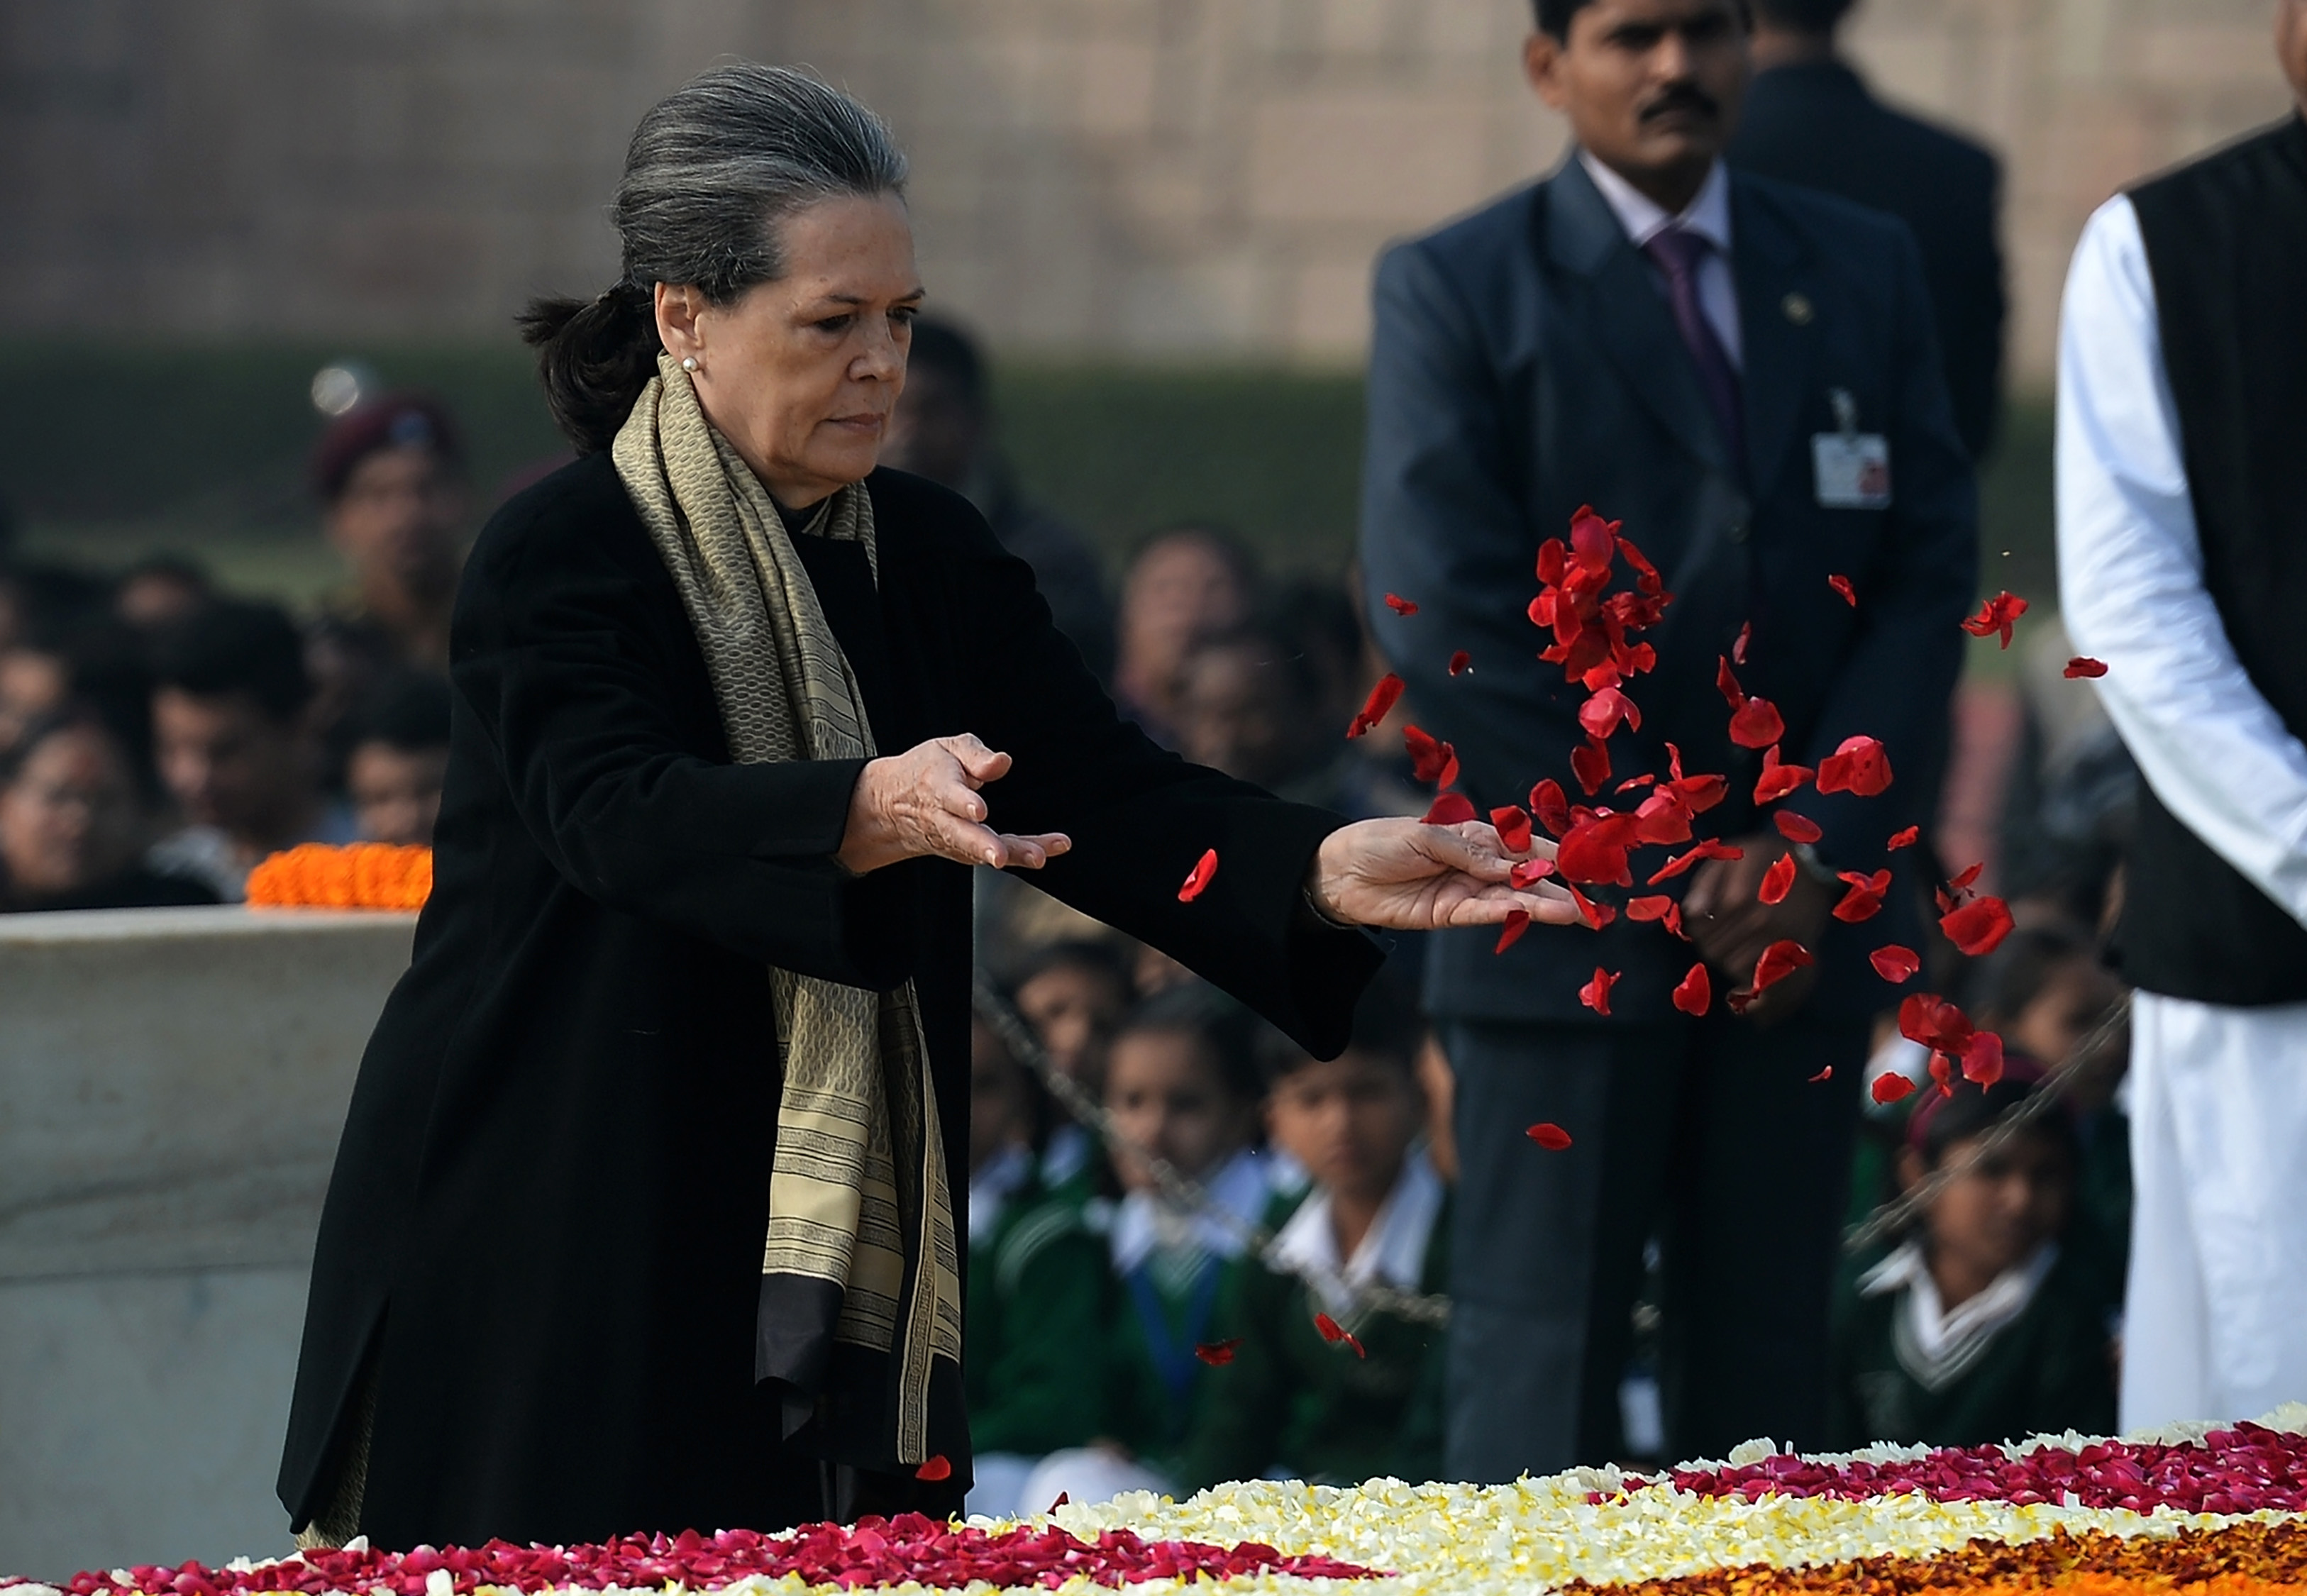 سونيا غاندى تضع الورود على النصب التذكارى للمهاتما غاندى فى ذكرى وفاته الـ69